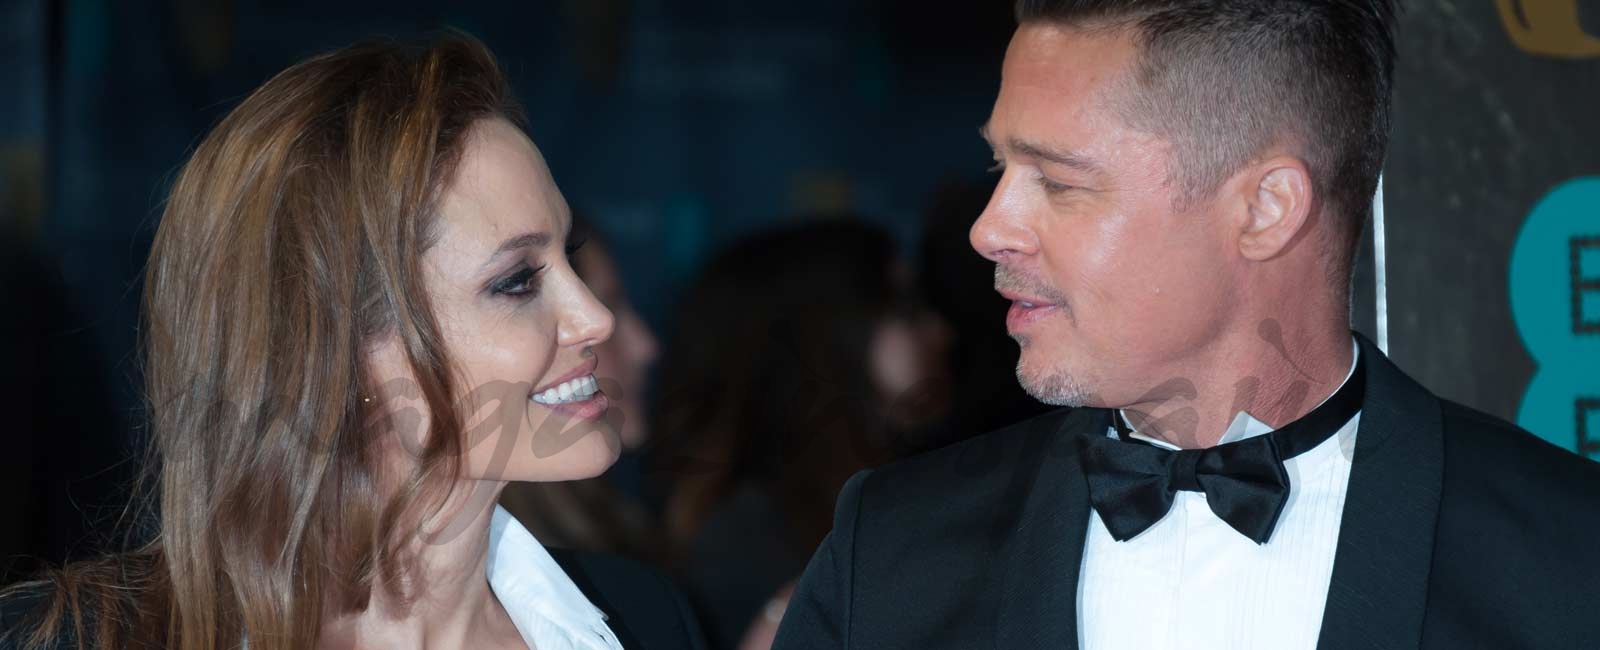 El reencuentro de Brad Pitt y Angelina Jolie